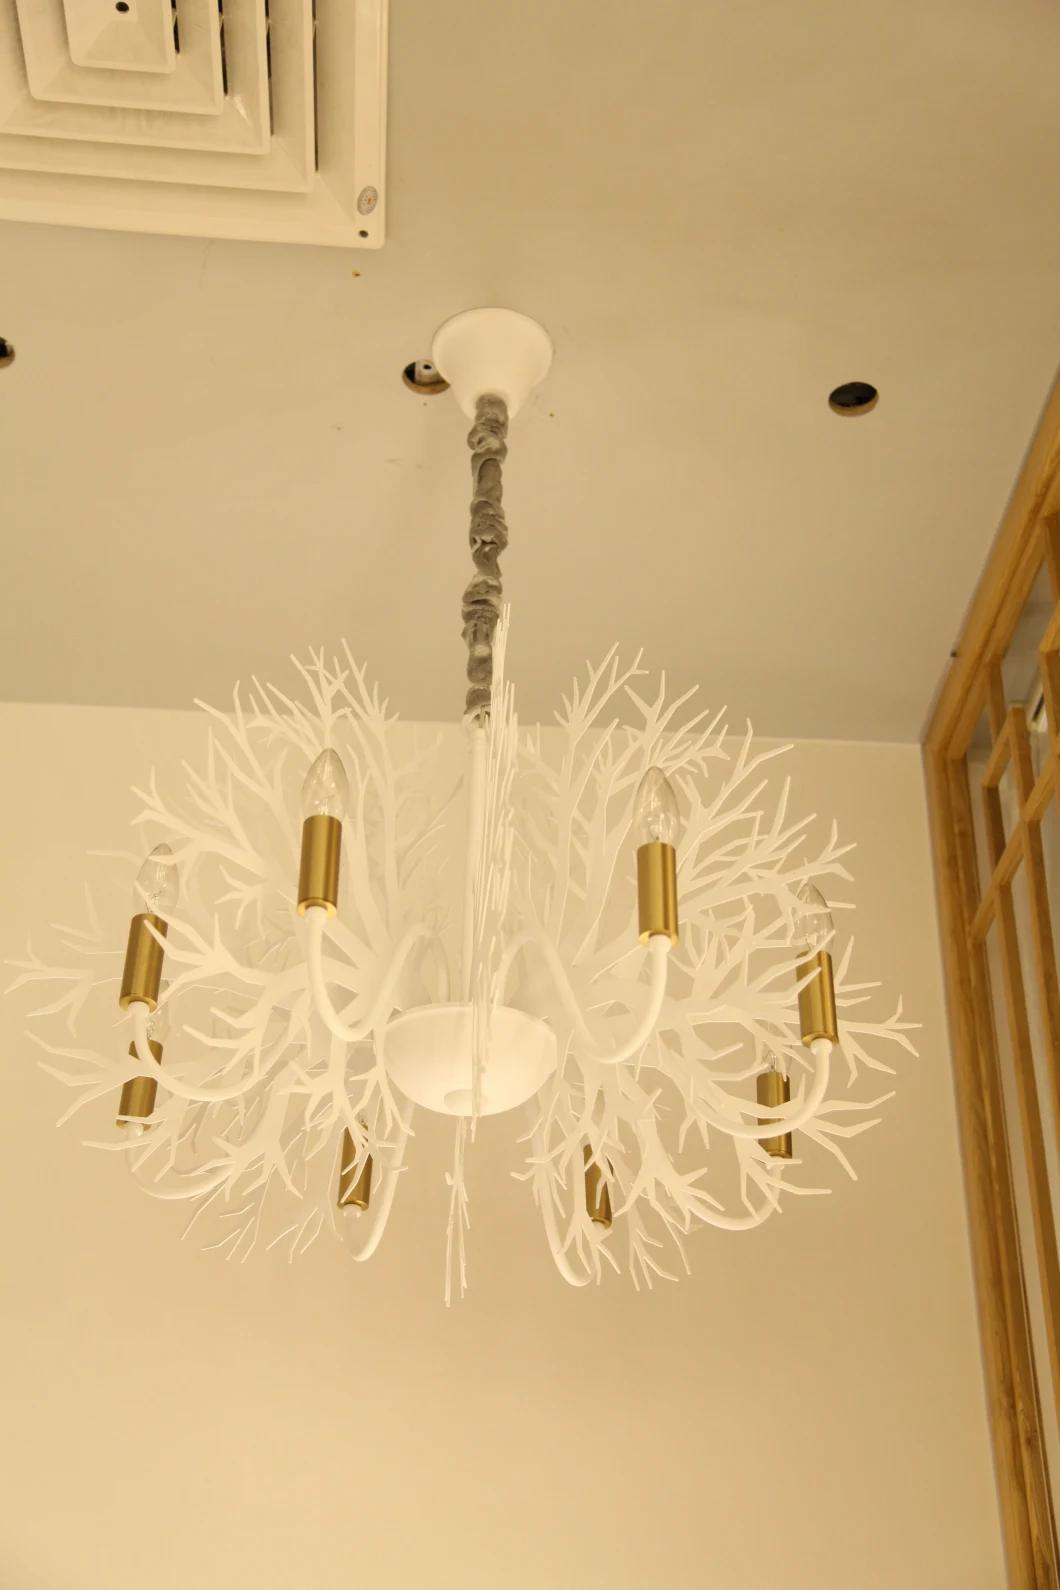 Masivel White Modern Chandelier for Bedroom Kitchen Living Room